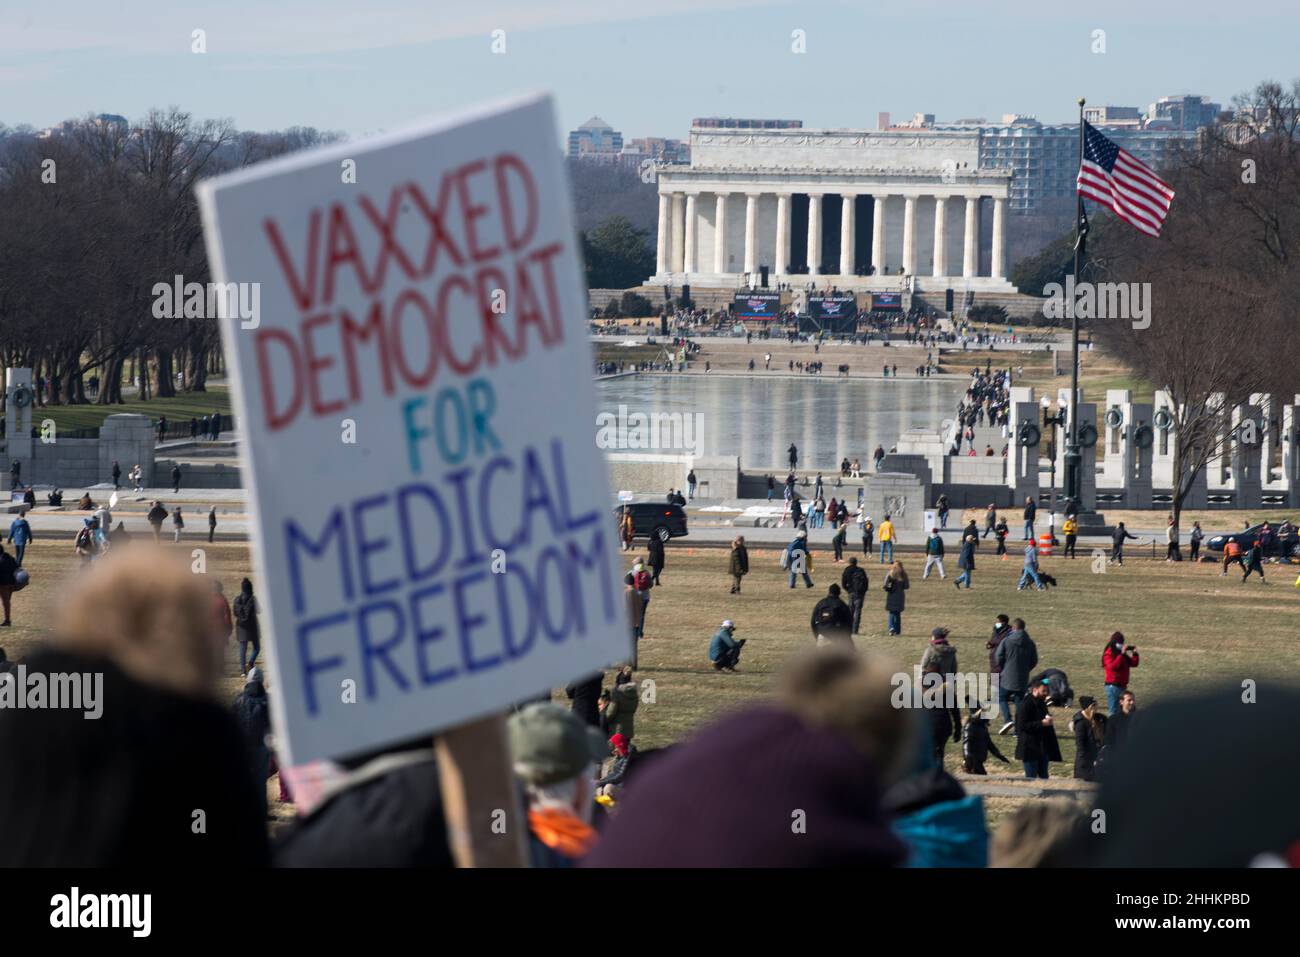 Vaxed Democrat for Medical Freedom à la défaite les mandats marchent vers le Lincoln Memorial Reflective pool à Washington, DC, le 23 janvier 2022. Banque D'Images